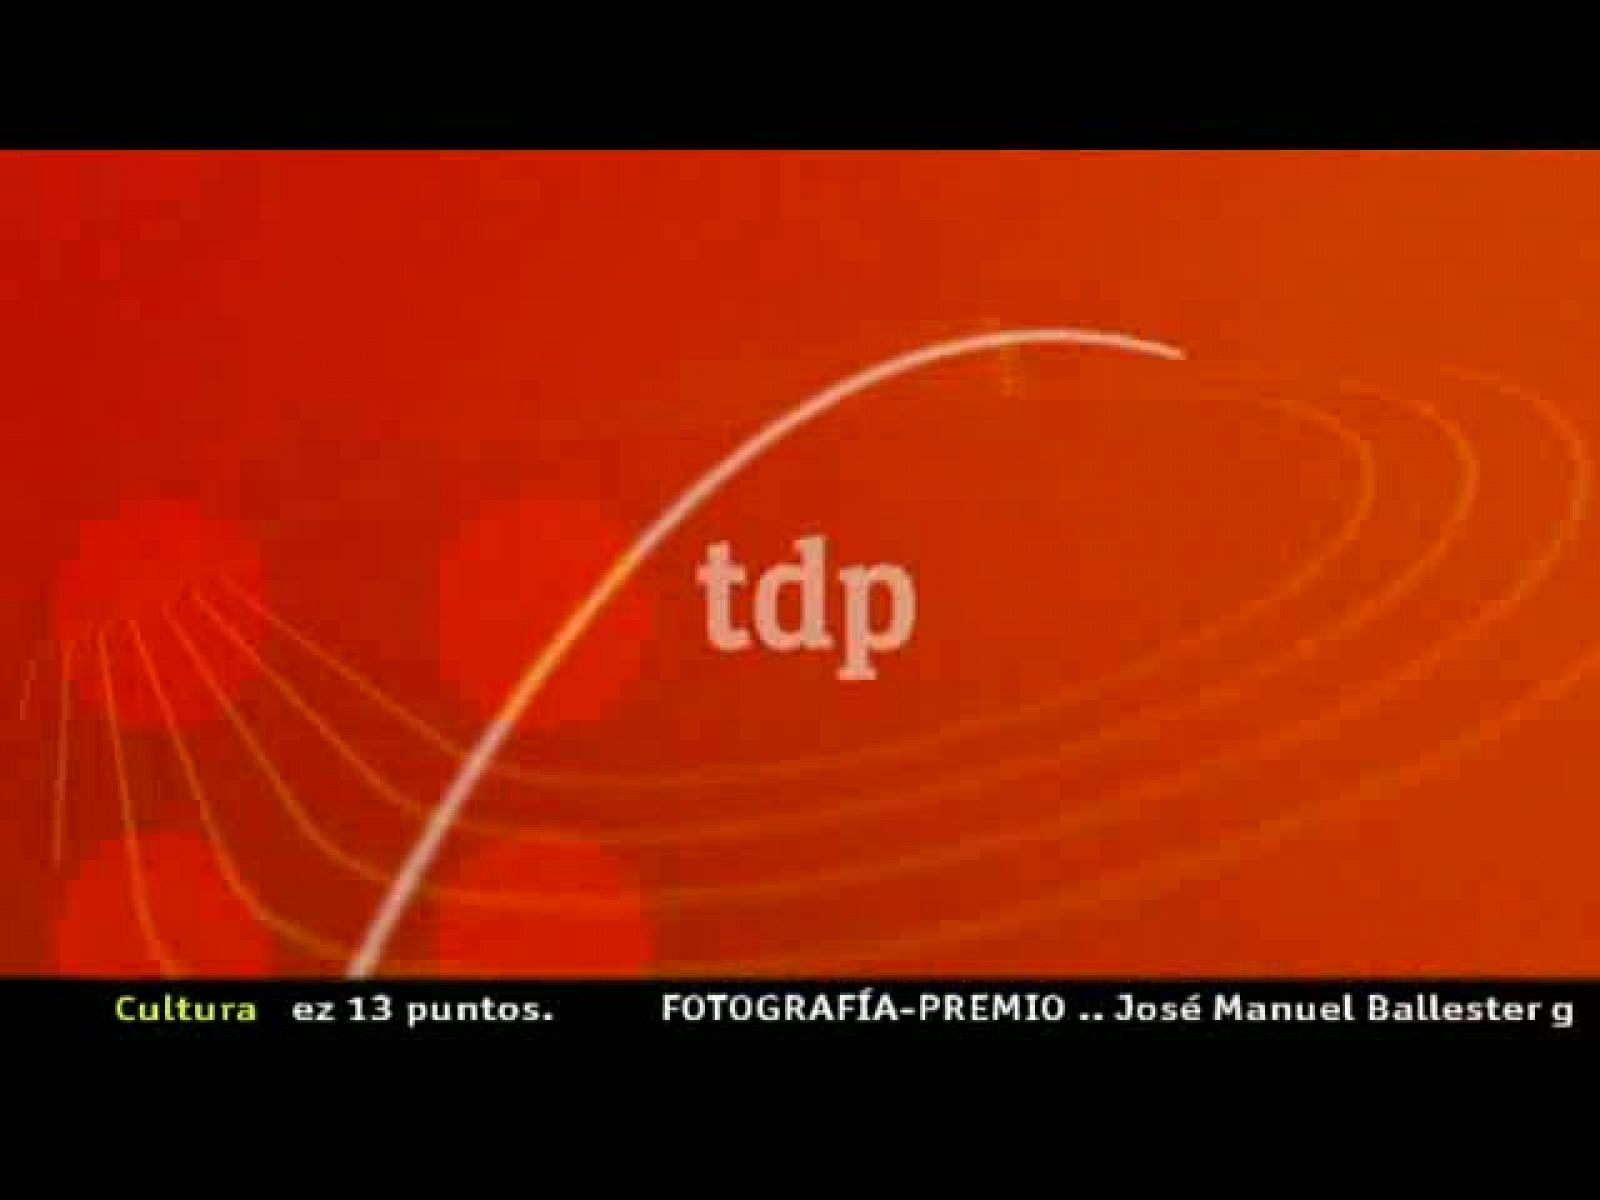 tdp noticias: TDP Noticias 2 | RTVE Play